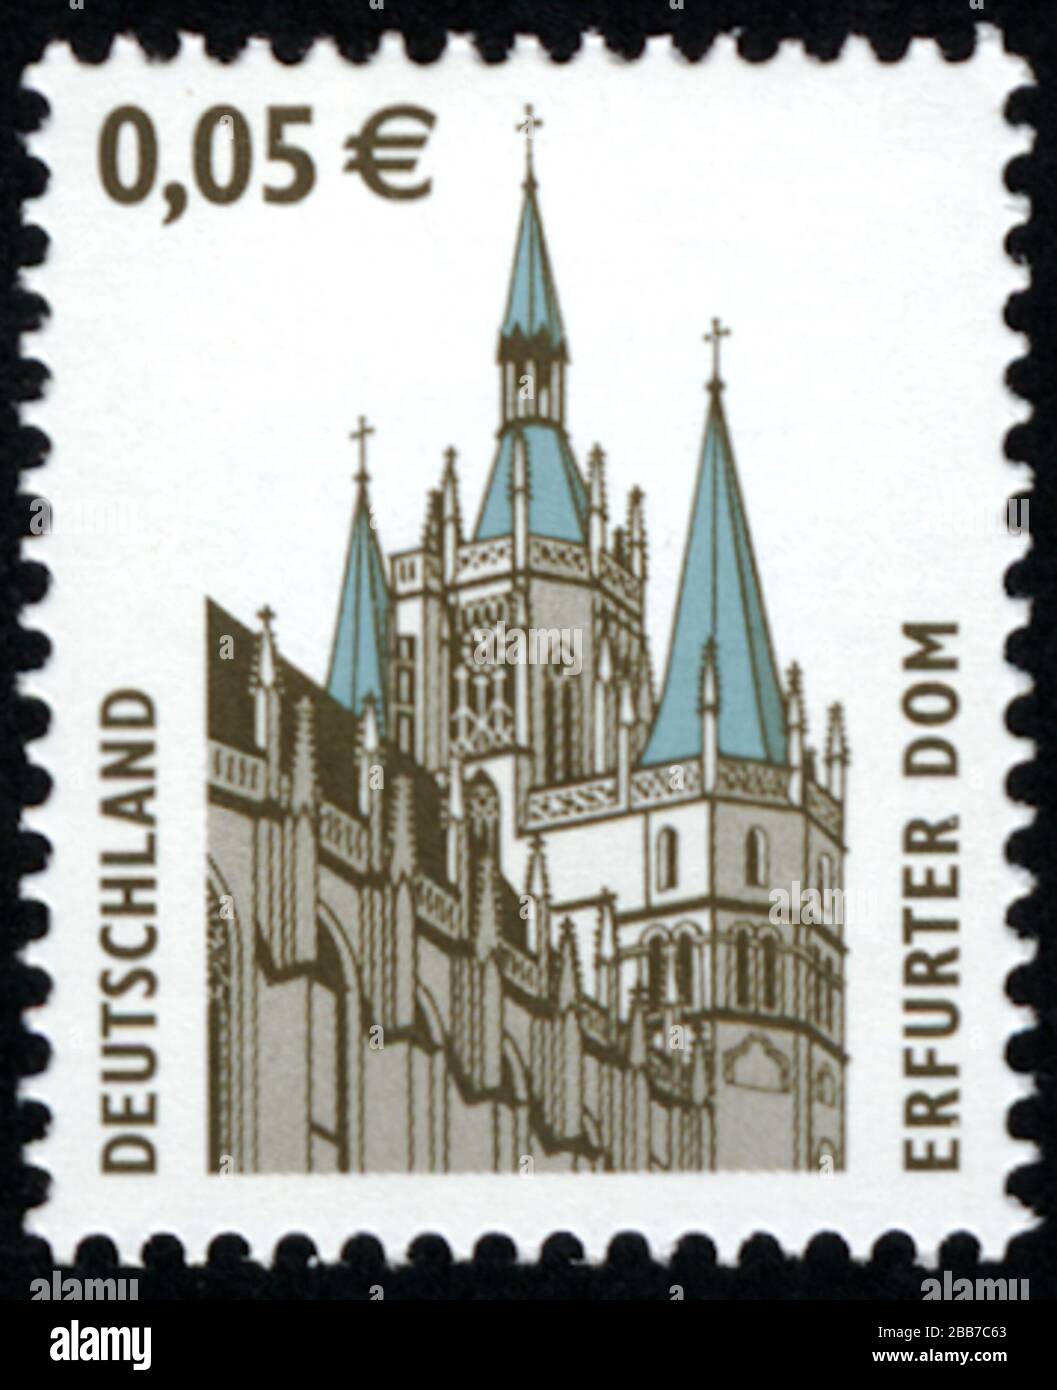 'Deutsch: Serienmarke der Deutschen Post 0.05 € Wert mit Erfurter Dom; 2004; Own work (Original caption:  eigene Sammlung--Karlarndthans 18:53, 1. Aug. 2010 (CEST)); Deutsche Post; ' Stock Photo